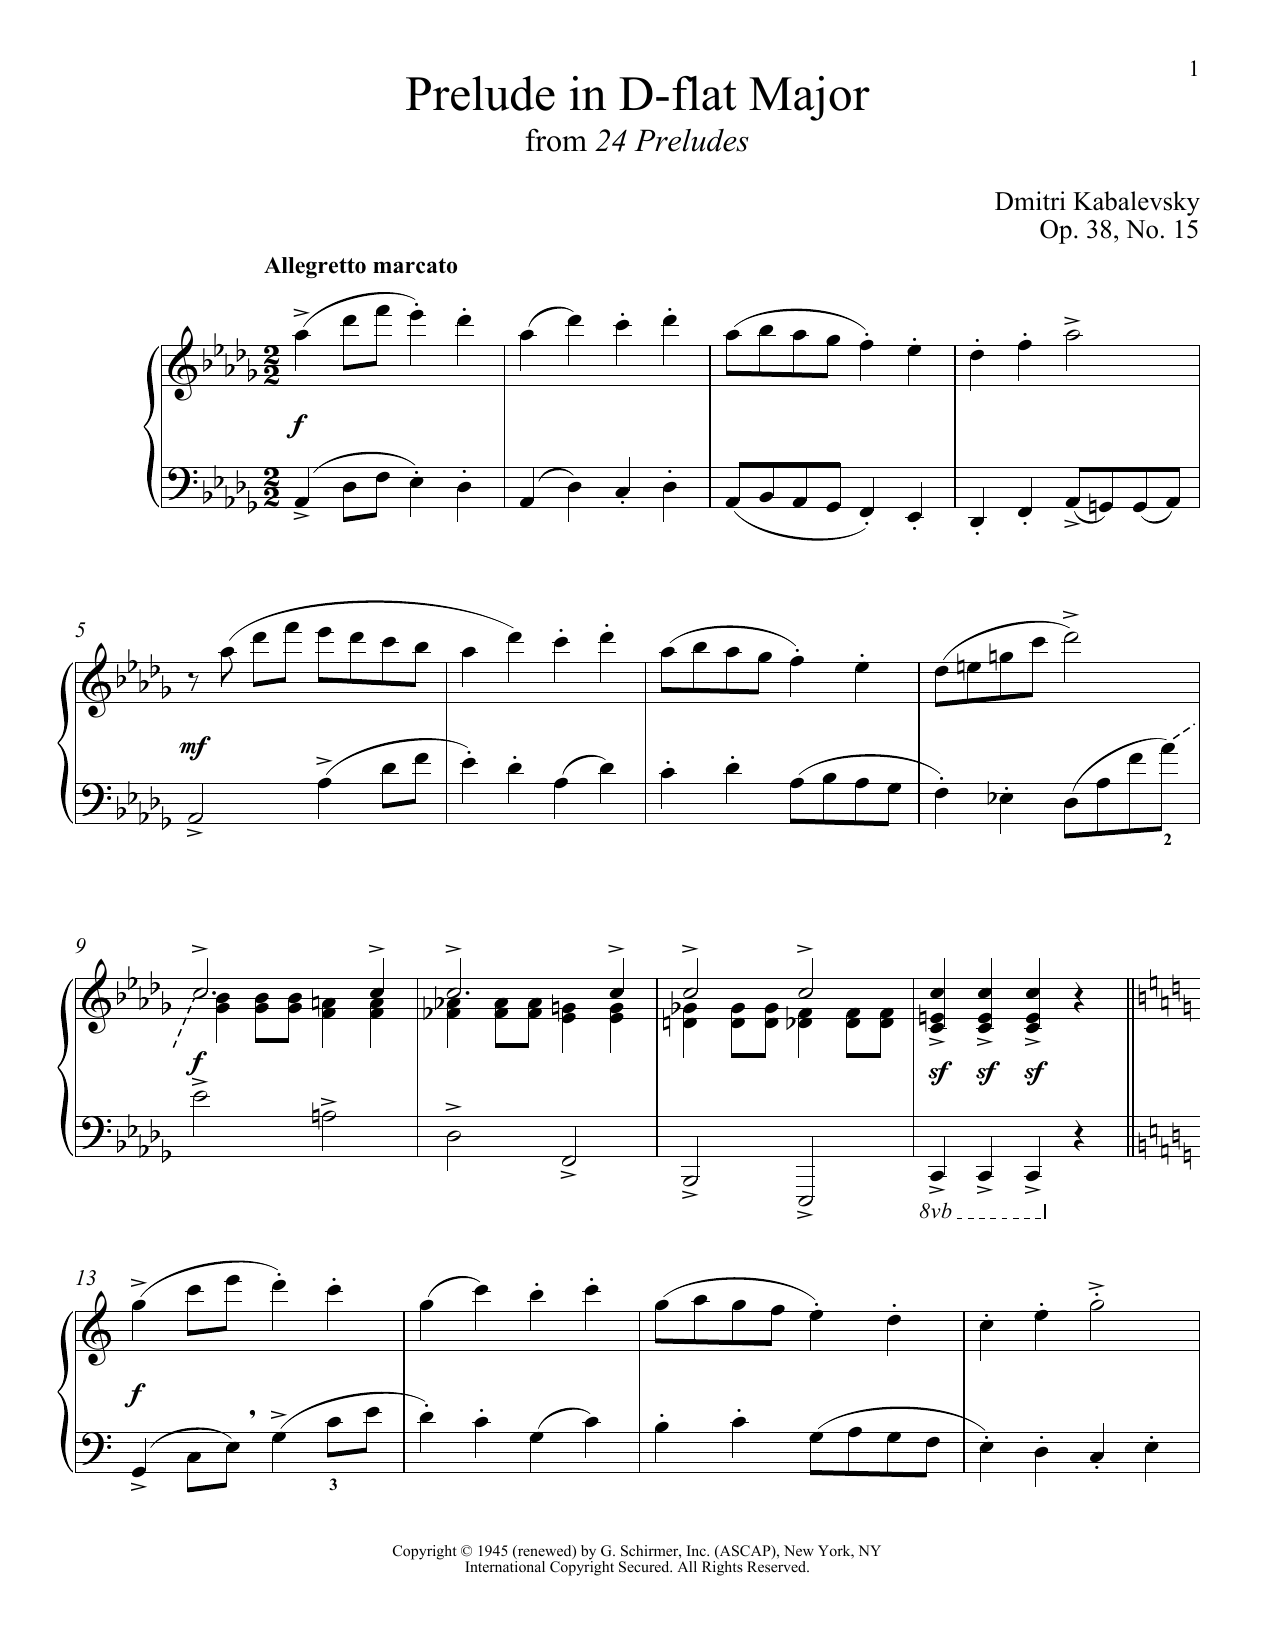 Download Dmitri Kabalevsky Prelude In D Flat Major, Op. 38, No. 15 Sheet Music